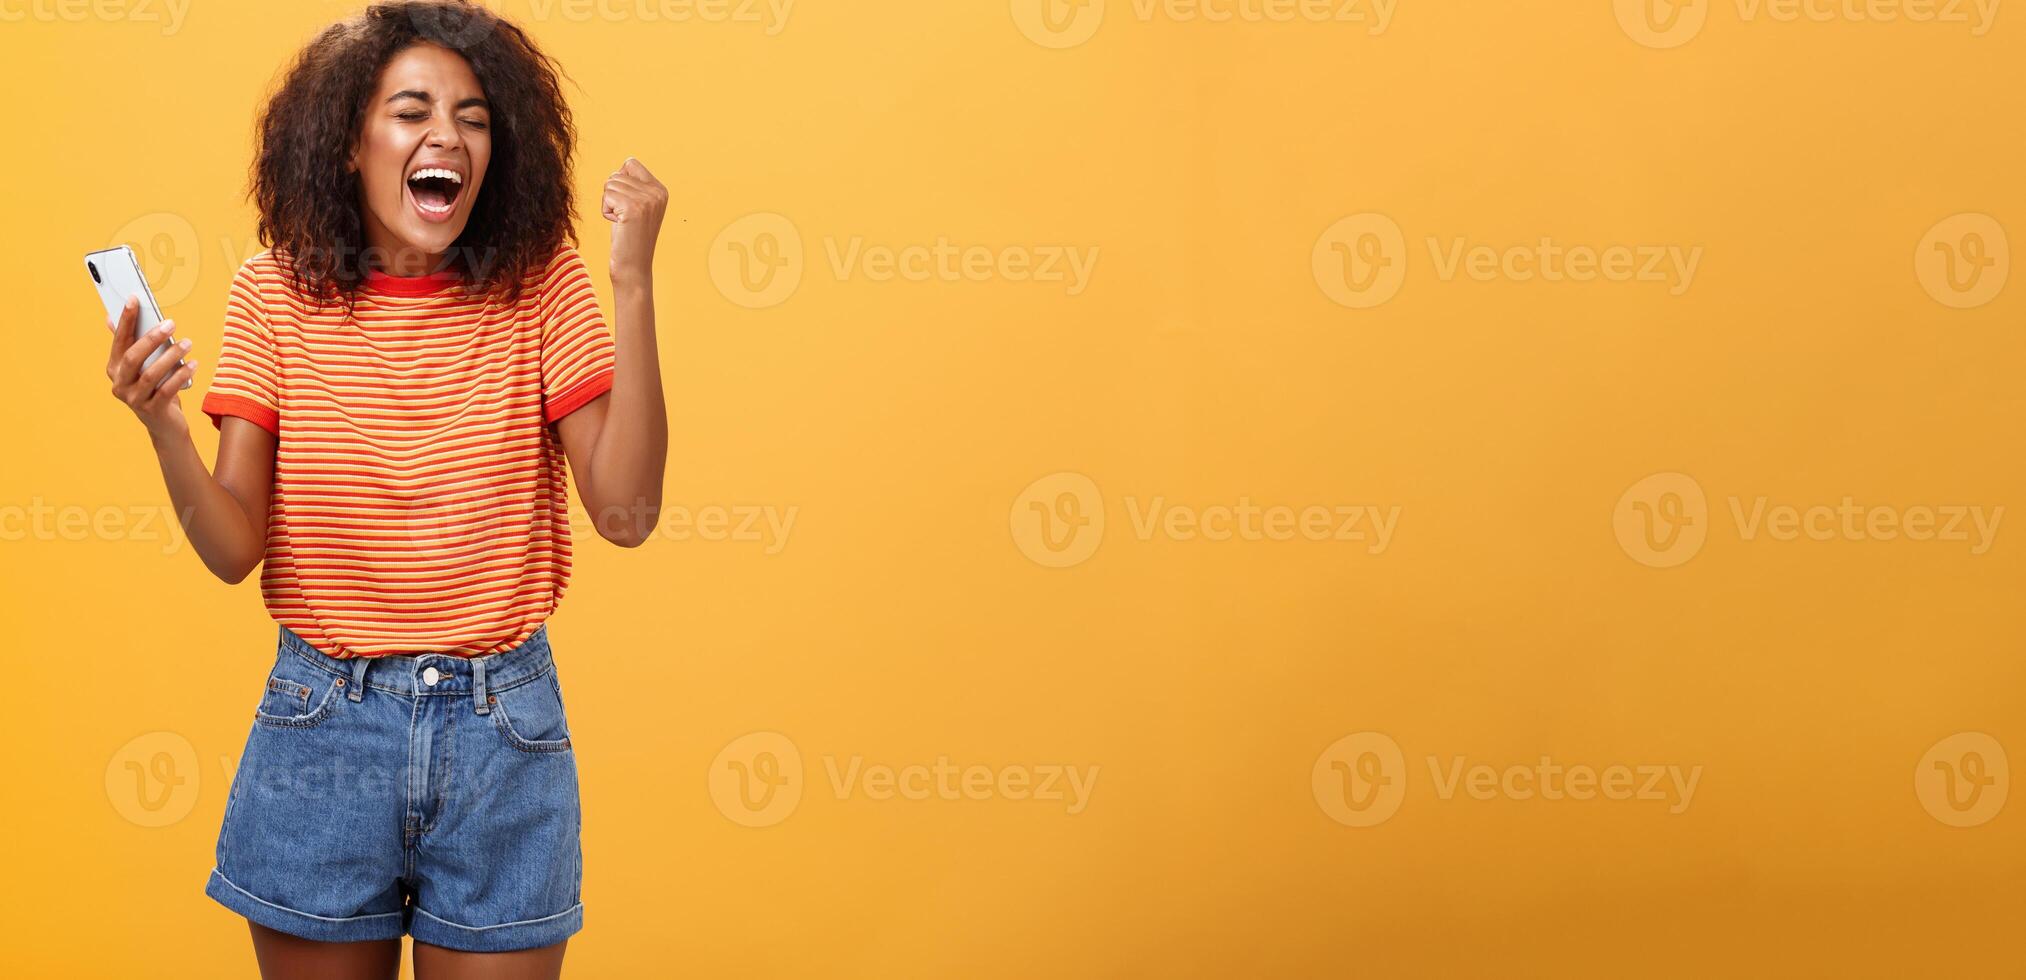 retrato de ambicioso contento joven africano americano niña Gritando desde felicidad y triunfo apretando puño en alegría y celebracion sensación emocionado y aliviado participación teléfono inteligente terminado naranja pared foto